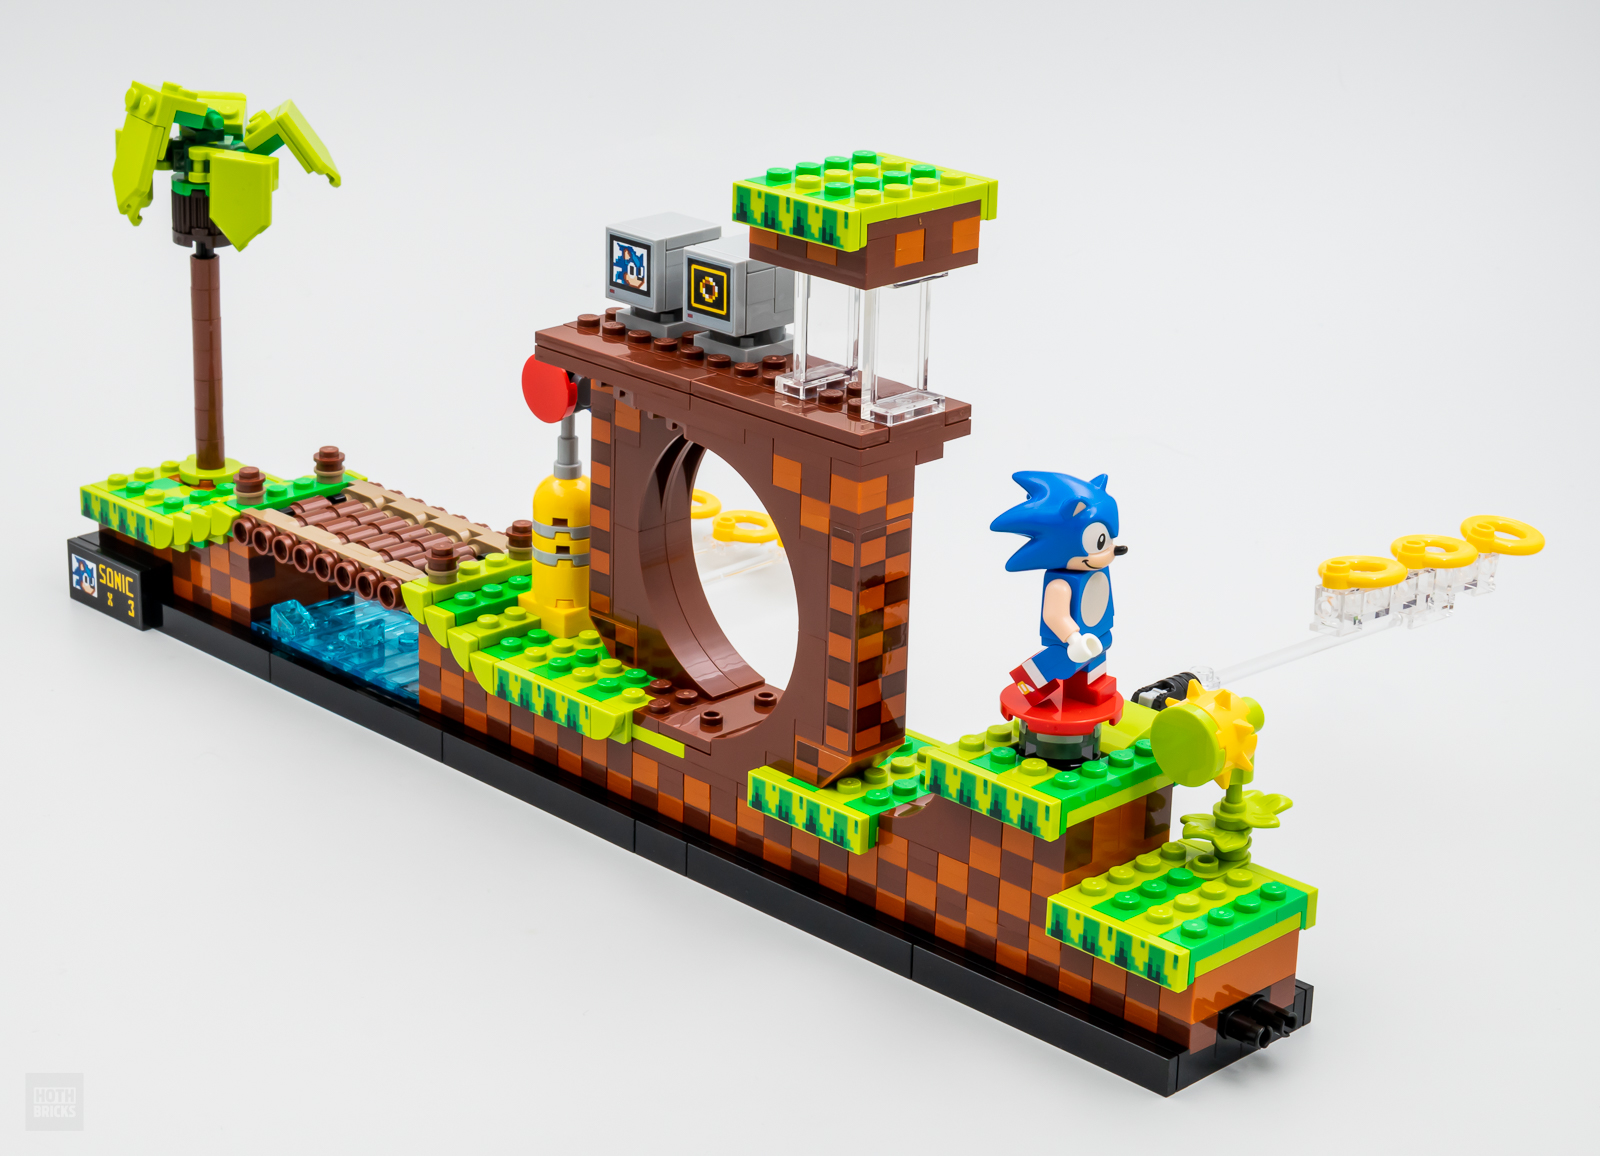 LEGO Sonic anunciado